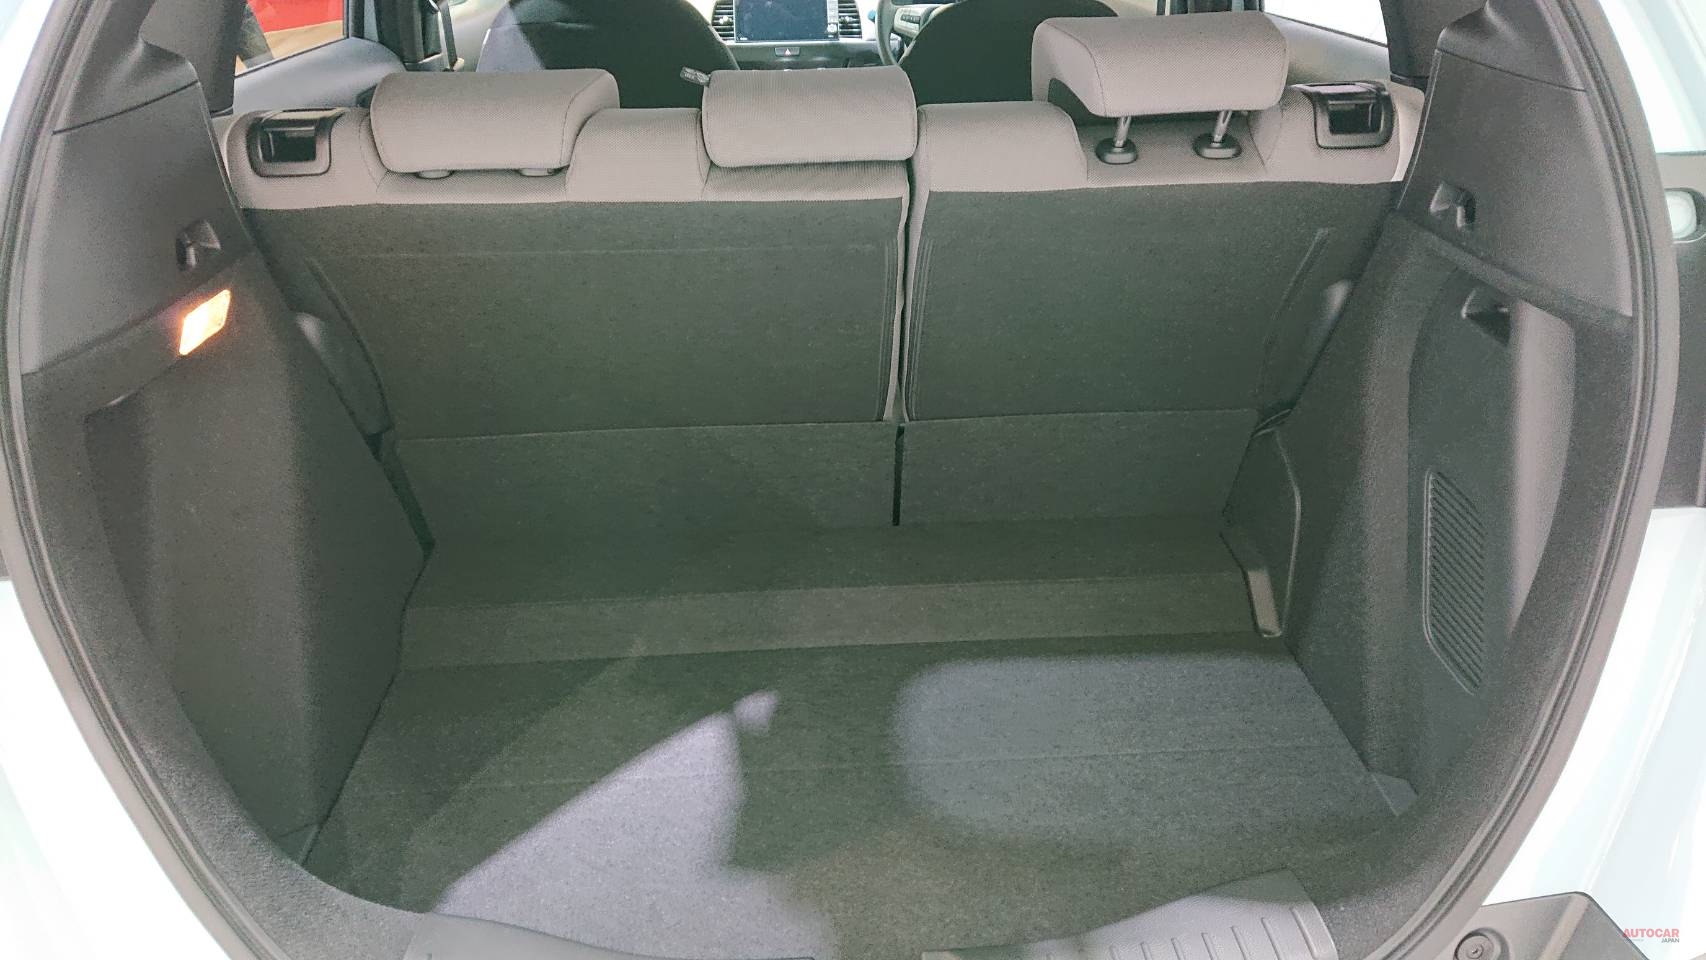 ホンダ フィット クロスター 新型フィットに Suvテイストの派生モデル 内装 荷室を撮影 Autocar Japan